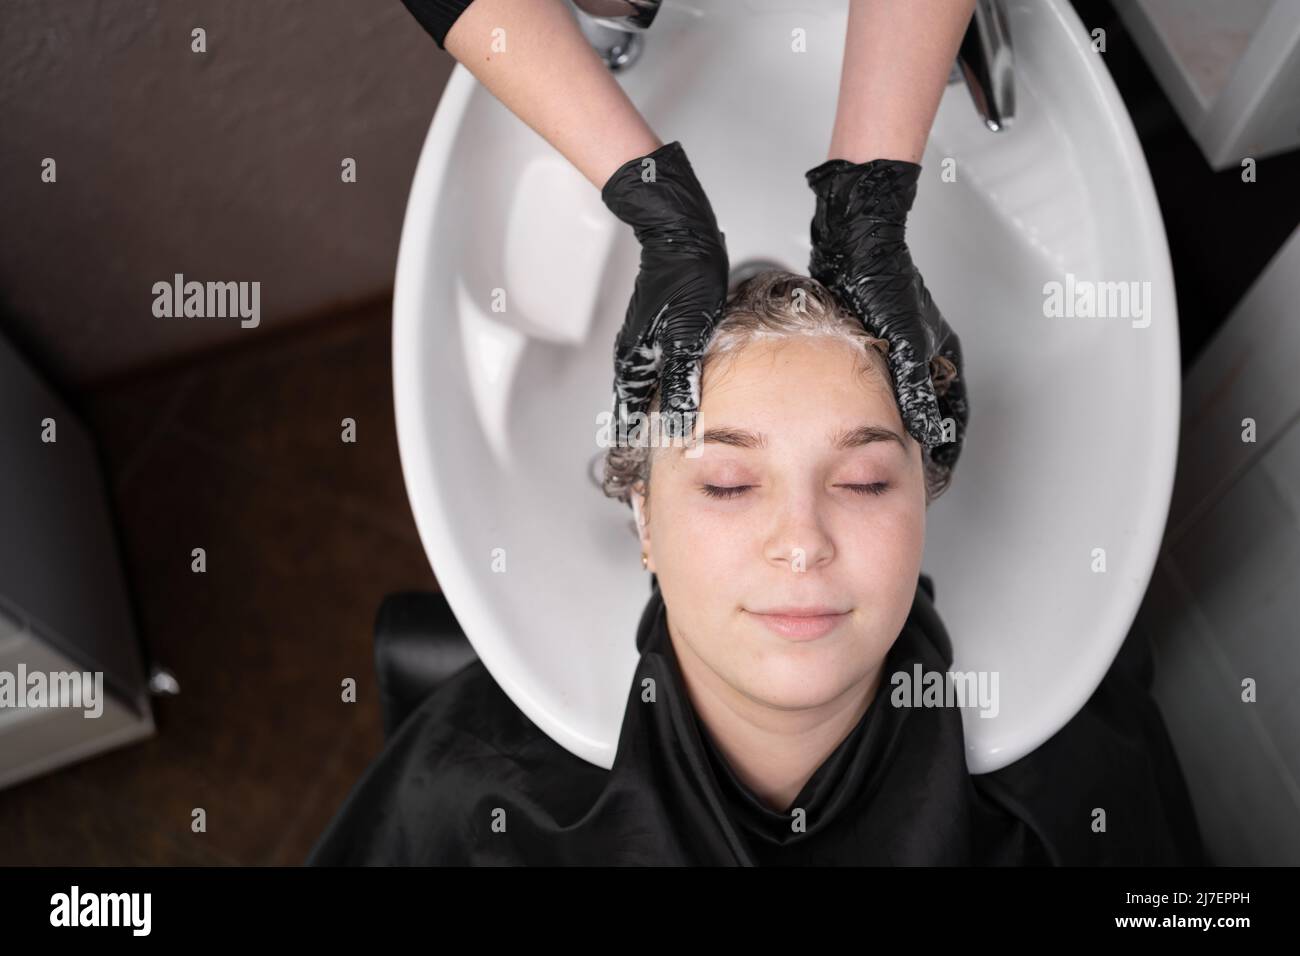 Nahaufnahme der Hände des Friseurs in Handschuhen, die den Kopf eines Kunden waschen. Schöne Dame entspannen und fühlen sich wohl beim Waschen der Haare mit Shampoo und Stockfoto